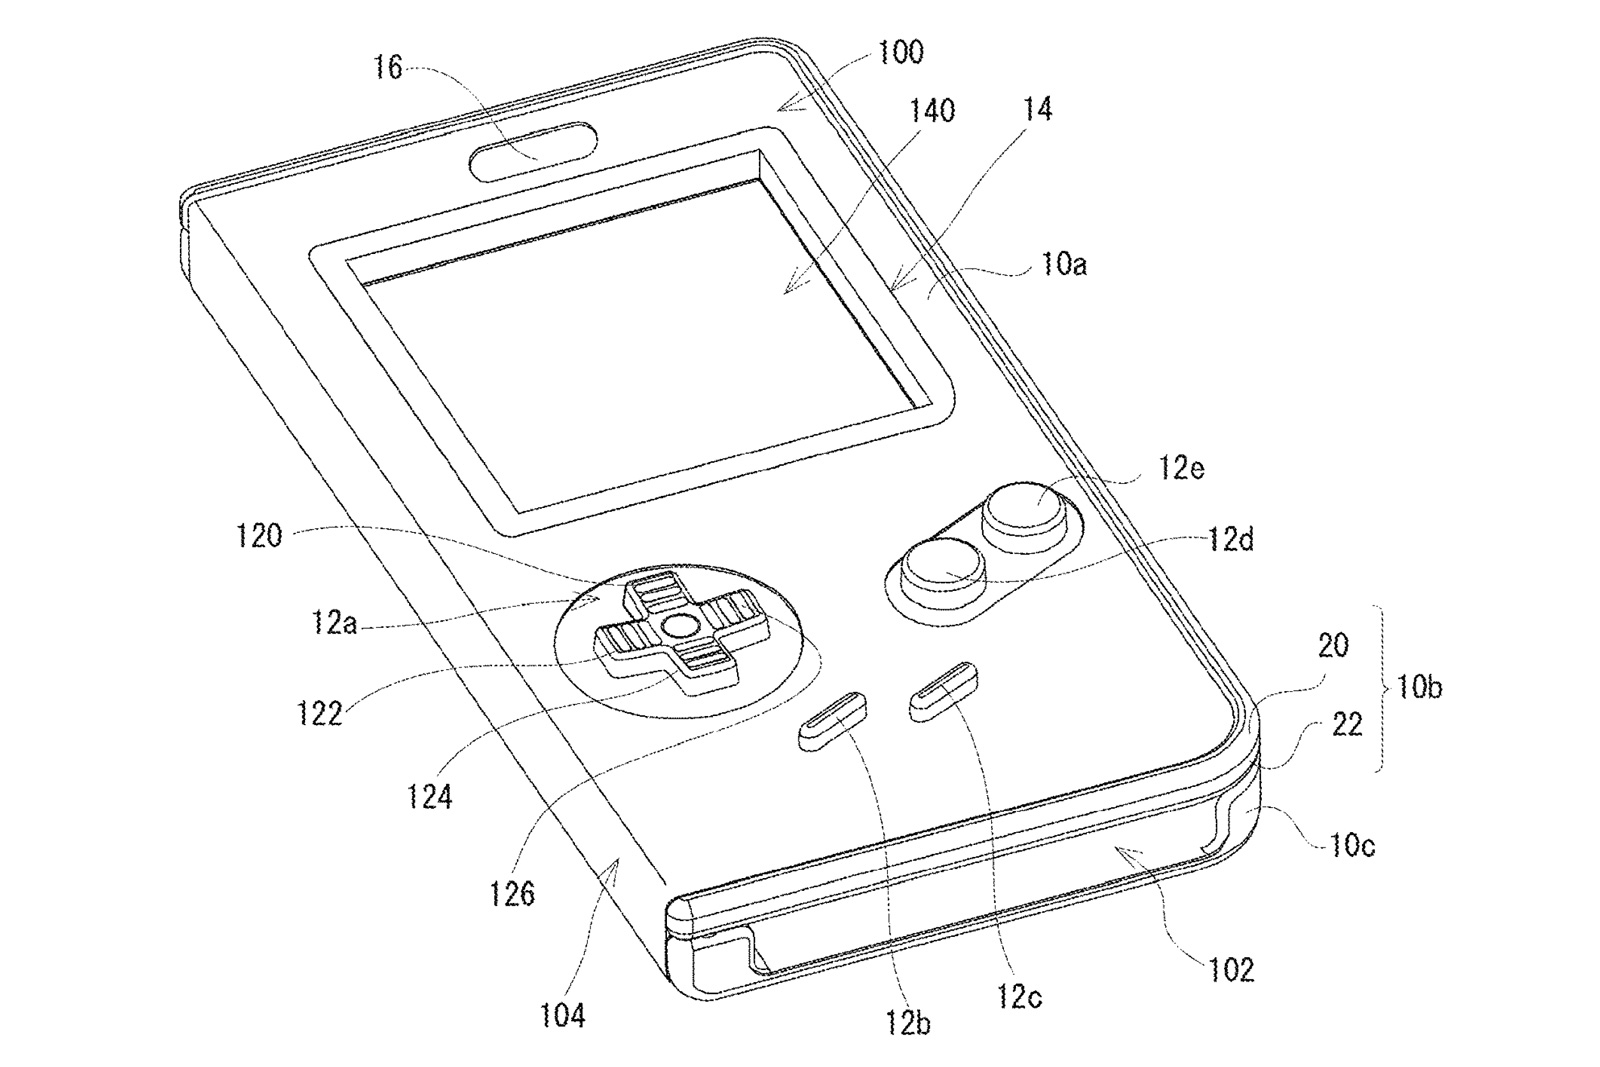 任天堂 スマホをゲームボーイにするケースの特許を出願 Engadget 日本版